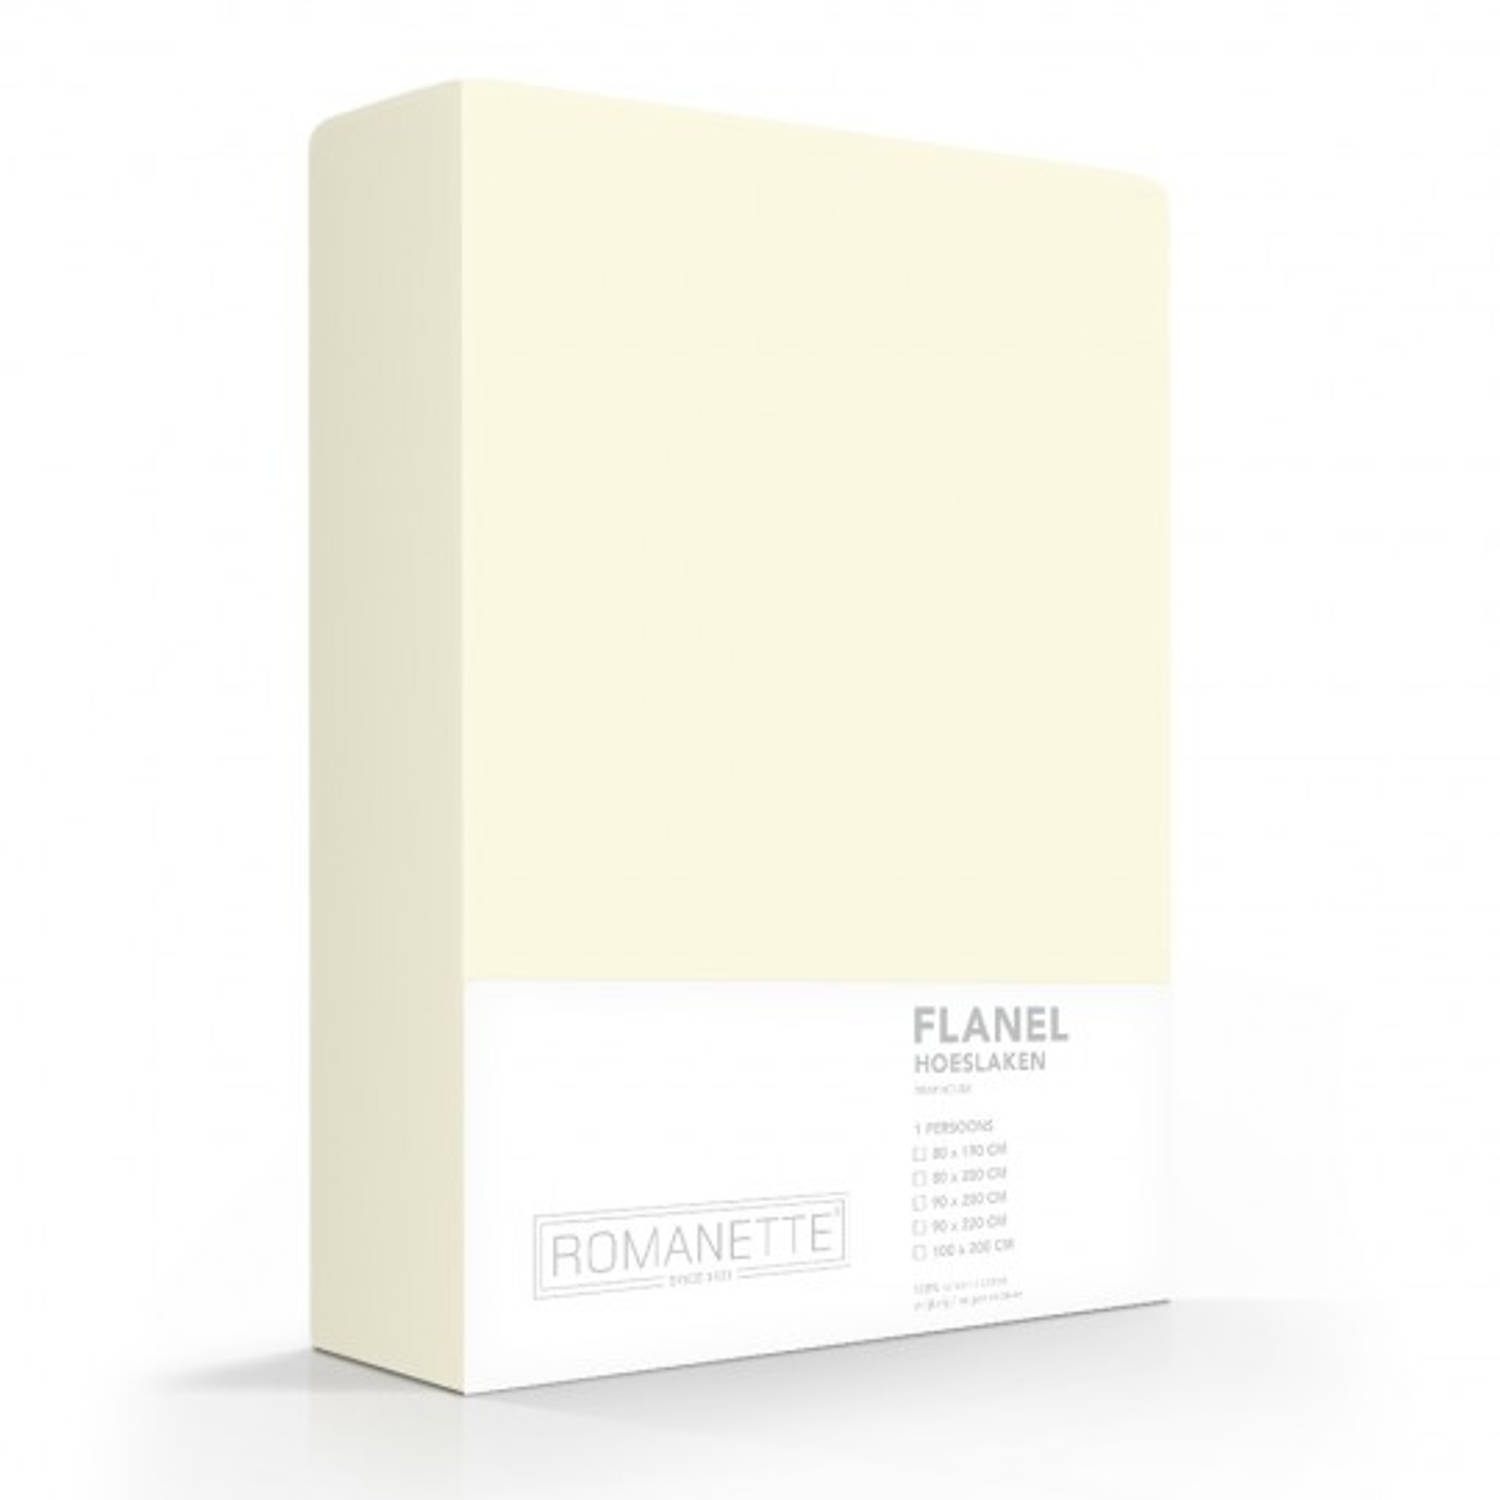 Flanellen Hoeslaken Ivoor Romanette-140 X 200 Cm